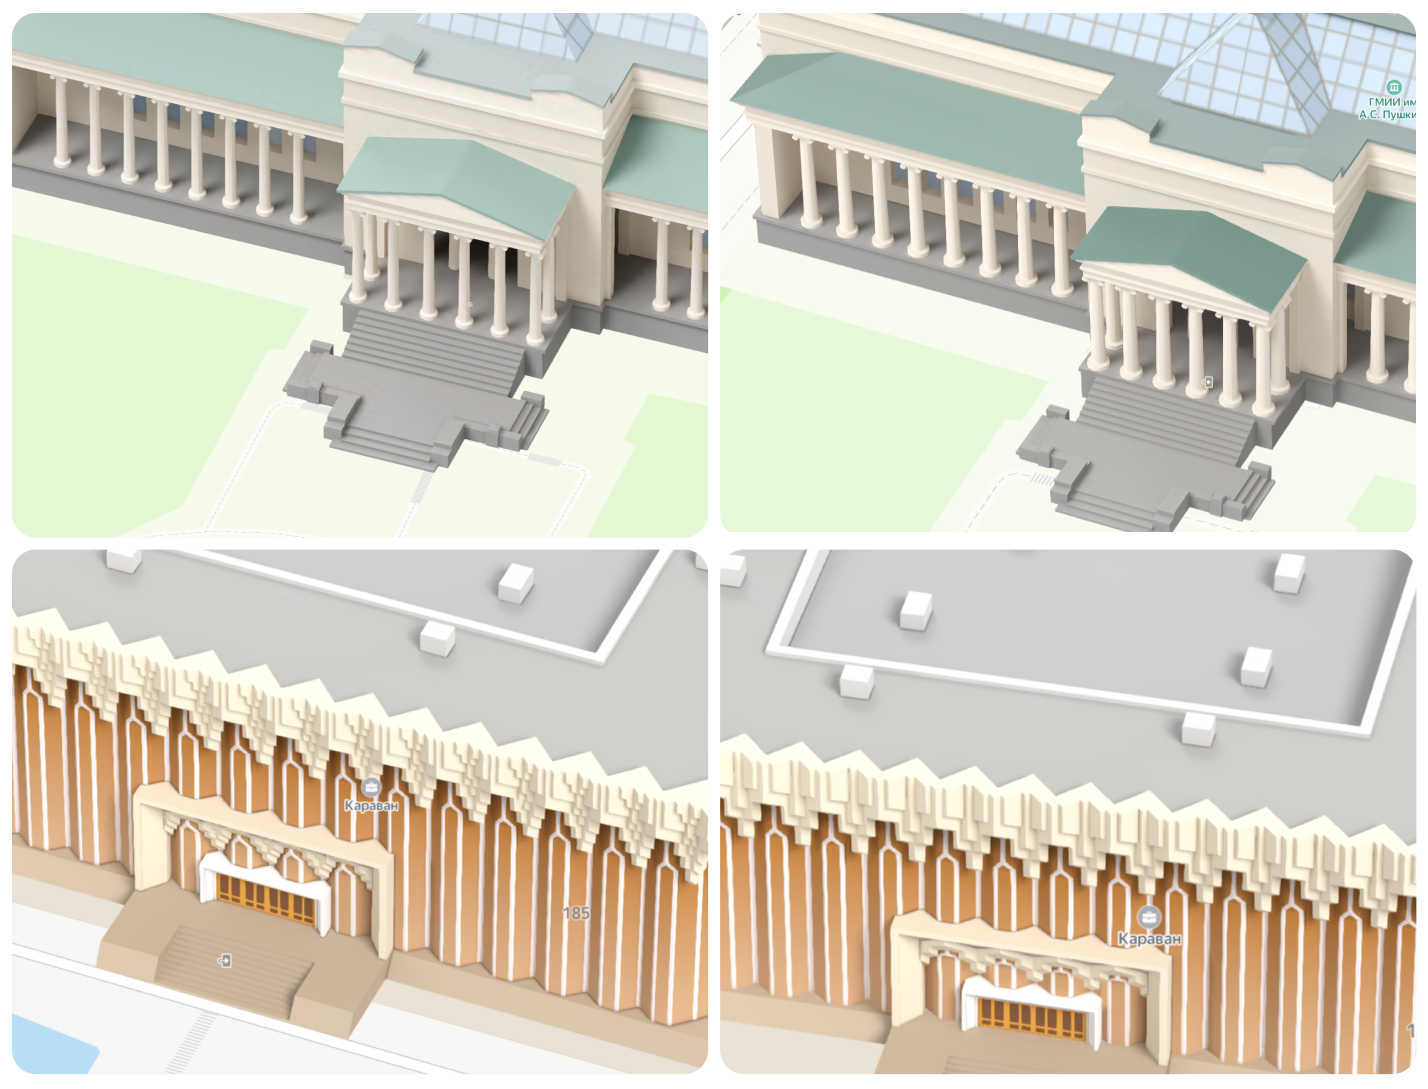 Пример гипертрофирования толщины колонн Пушкинского музея. Ниже пример упрощения паттерна геометрии и увеличения масштаба элементов